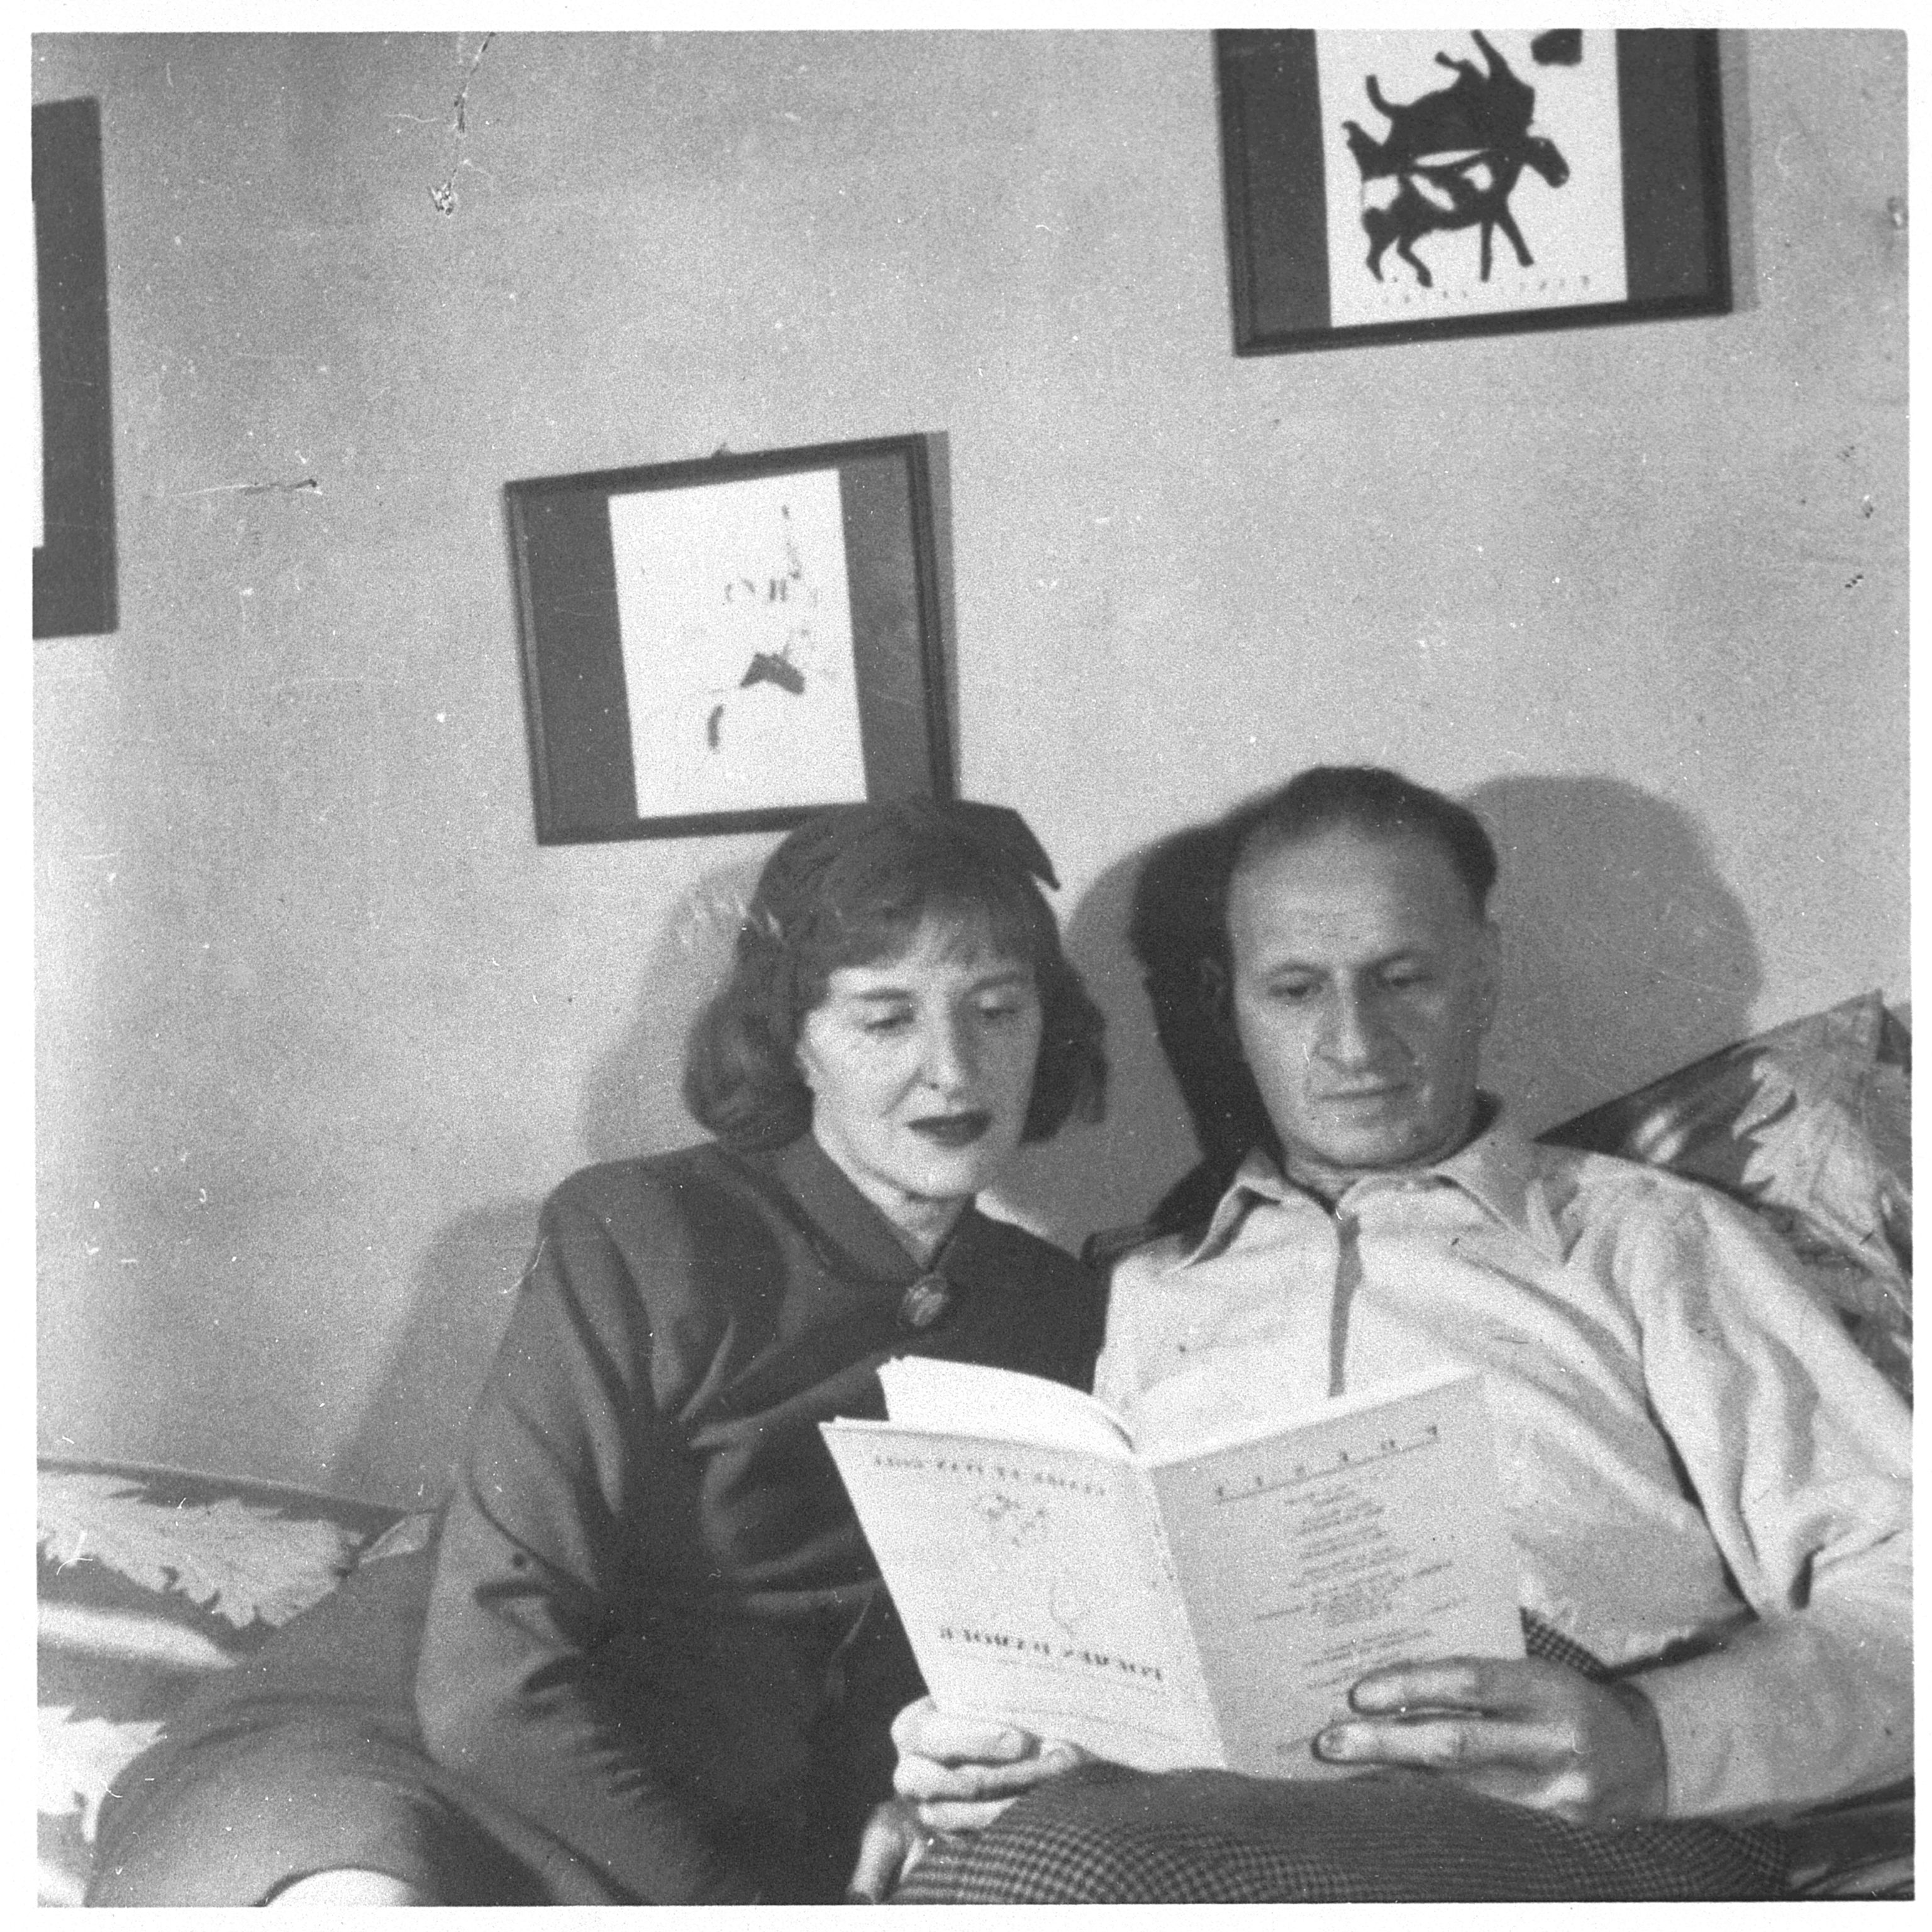 Claire und Yvan Goll, New York, 1945/47